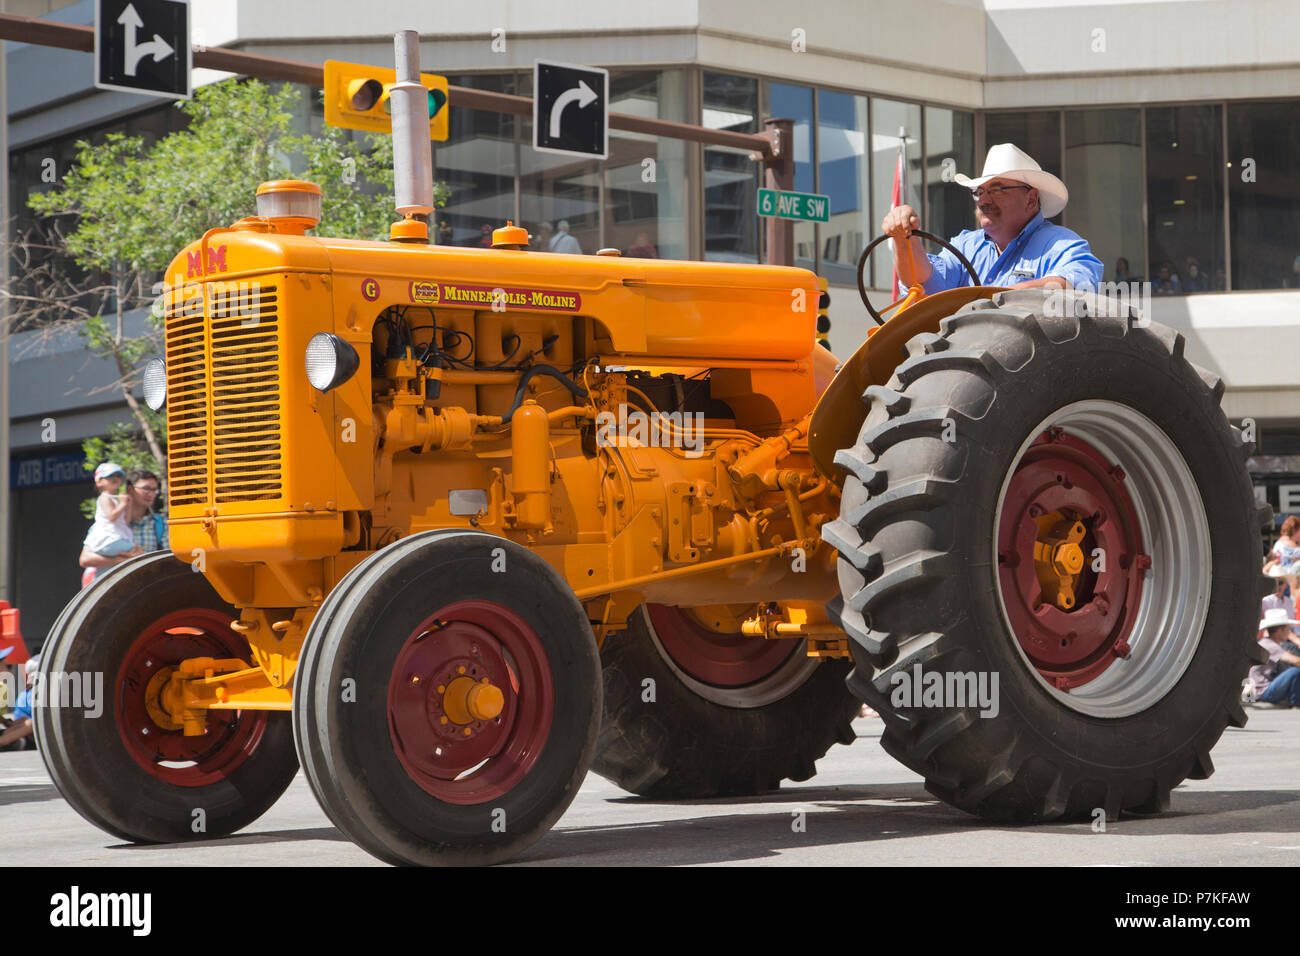 Man conduit le modèle Minneapolis Moline G de tracteur d'époque dans le Calgary Stampede Parade. La parade dans le centre-ville fait chaque année le début du Stampede de Calgary. Rosanne Tackaberry/Alamy Live News Banque D'Images